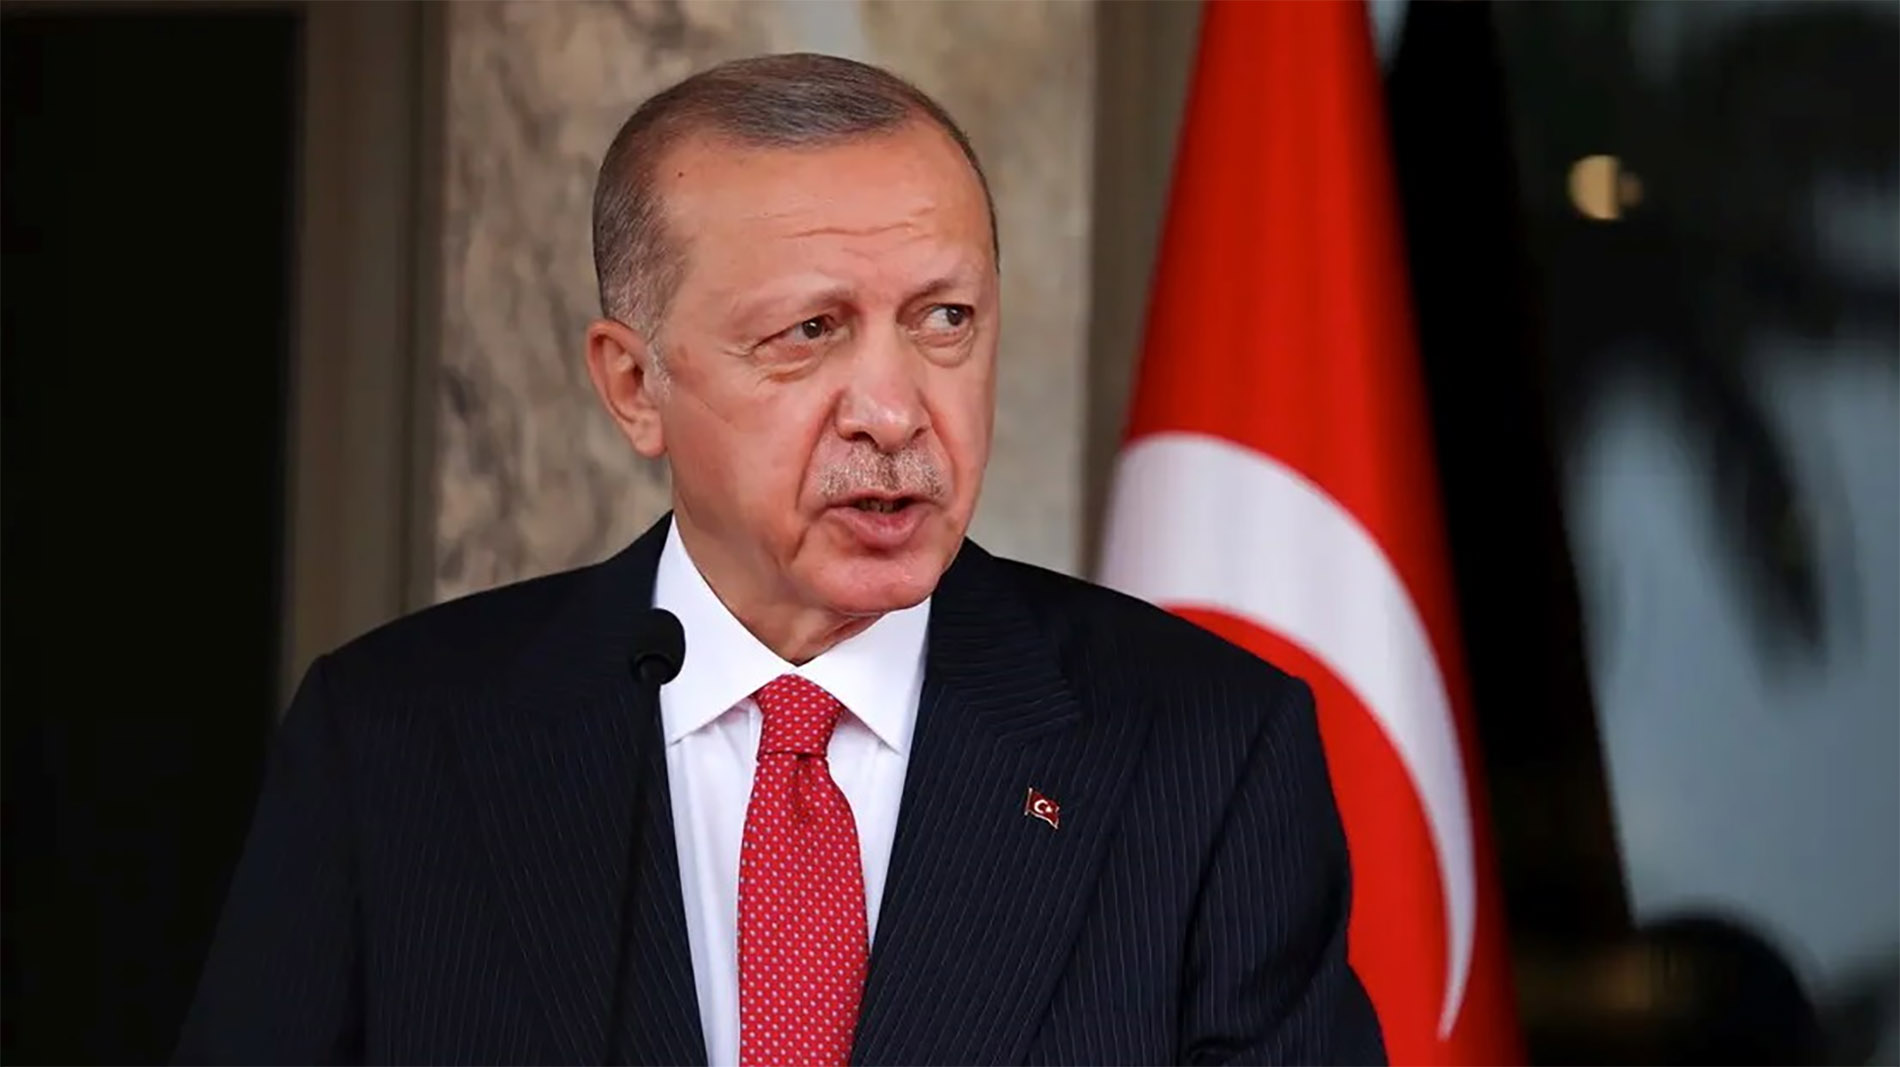 أردوغان يطلق سفينة تنقيب بالمتوسط: لا نحتاج لإذن من أحد